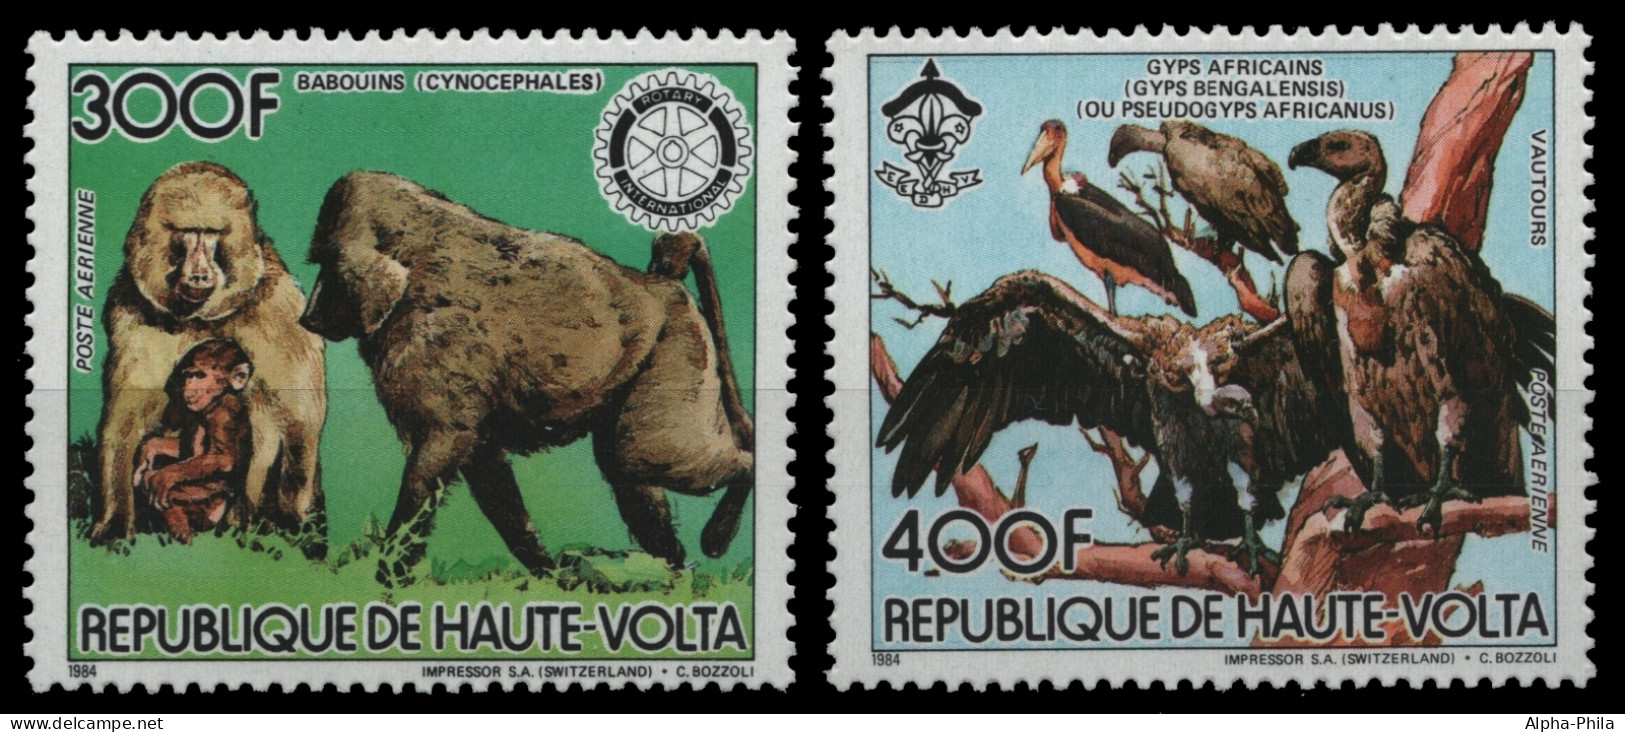 Obervolta 1984 - Mi-Nr. 961-962 A ** - MNH - Wildtiere / Wild Animals - Haute-Volta (1958-1984)